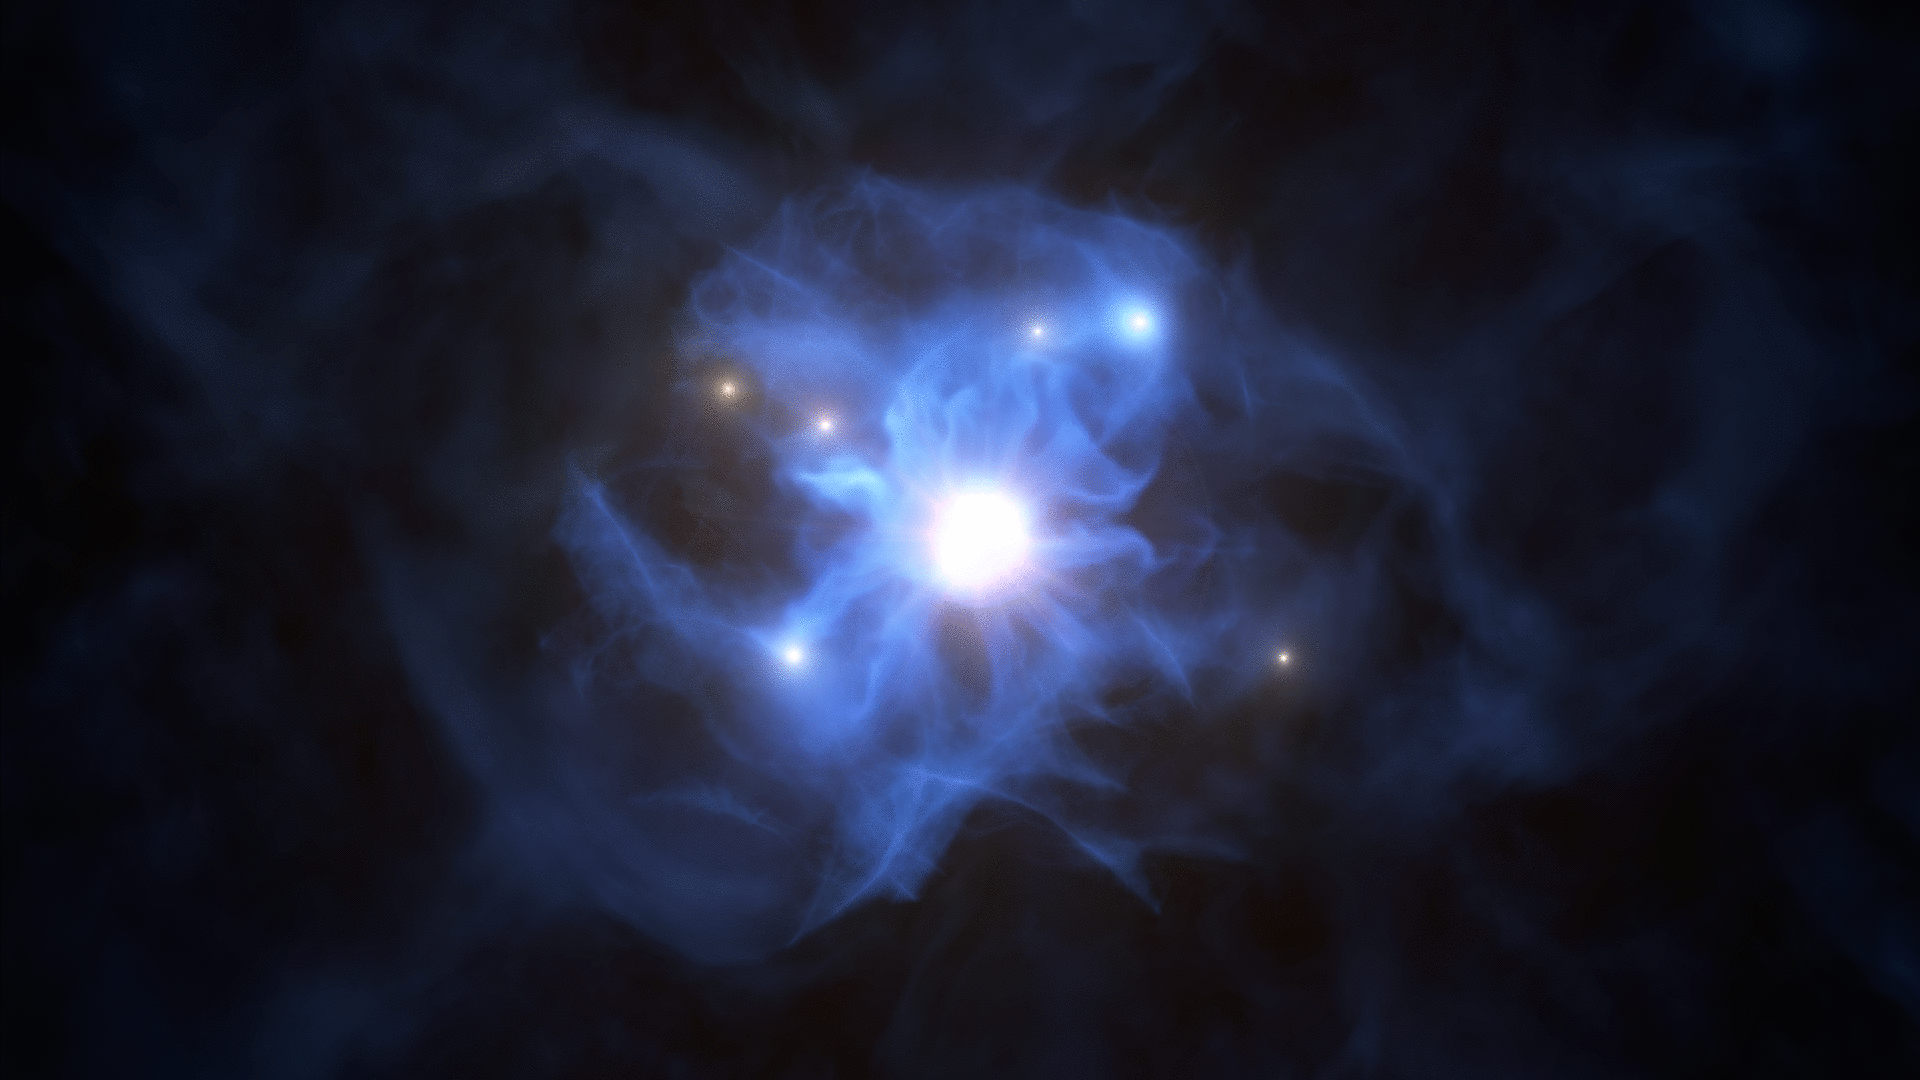 Frühes Universum: Galaxien im dunklen Netz gefangen